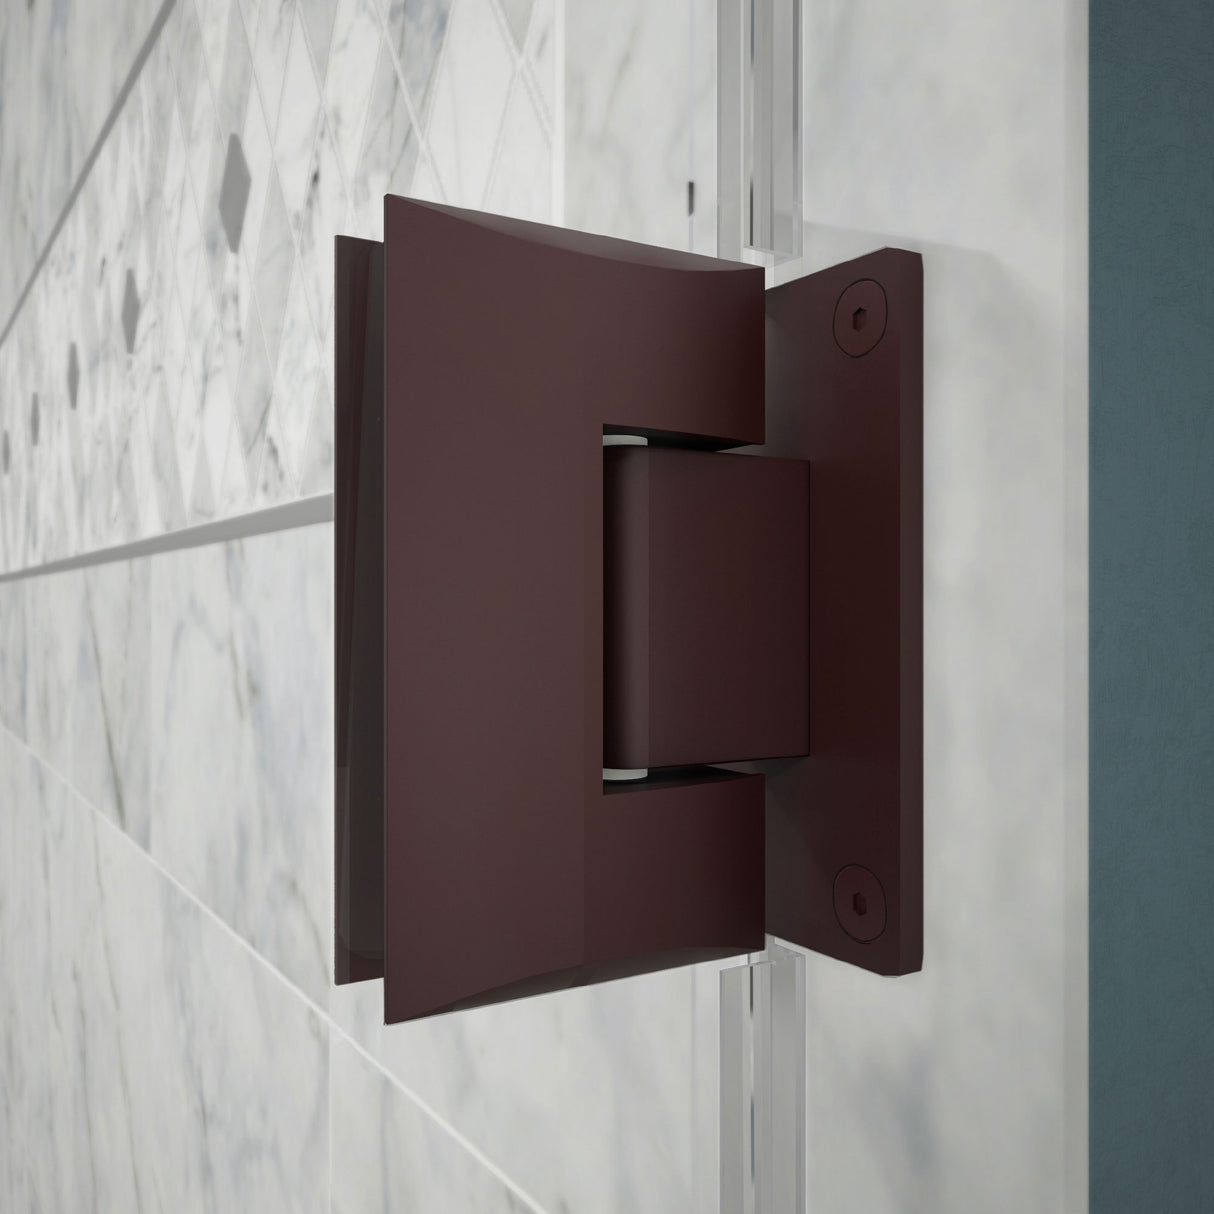 DreamLine Unidoor Plus 64-64 1/2 in. W x 72 in. H Frameless Hinged Shower Door with 36 in. Half Panel in Oil Rubbed Bronze